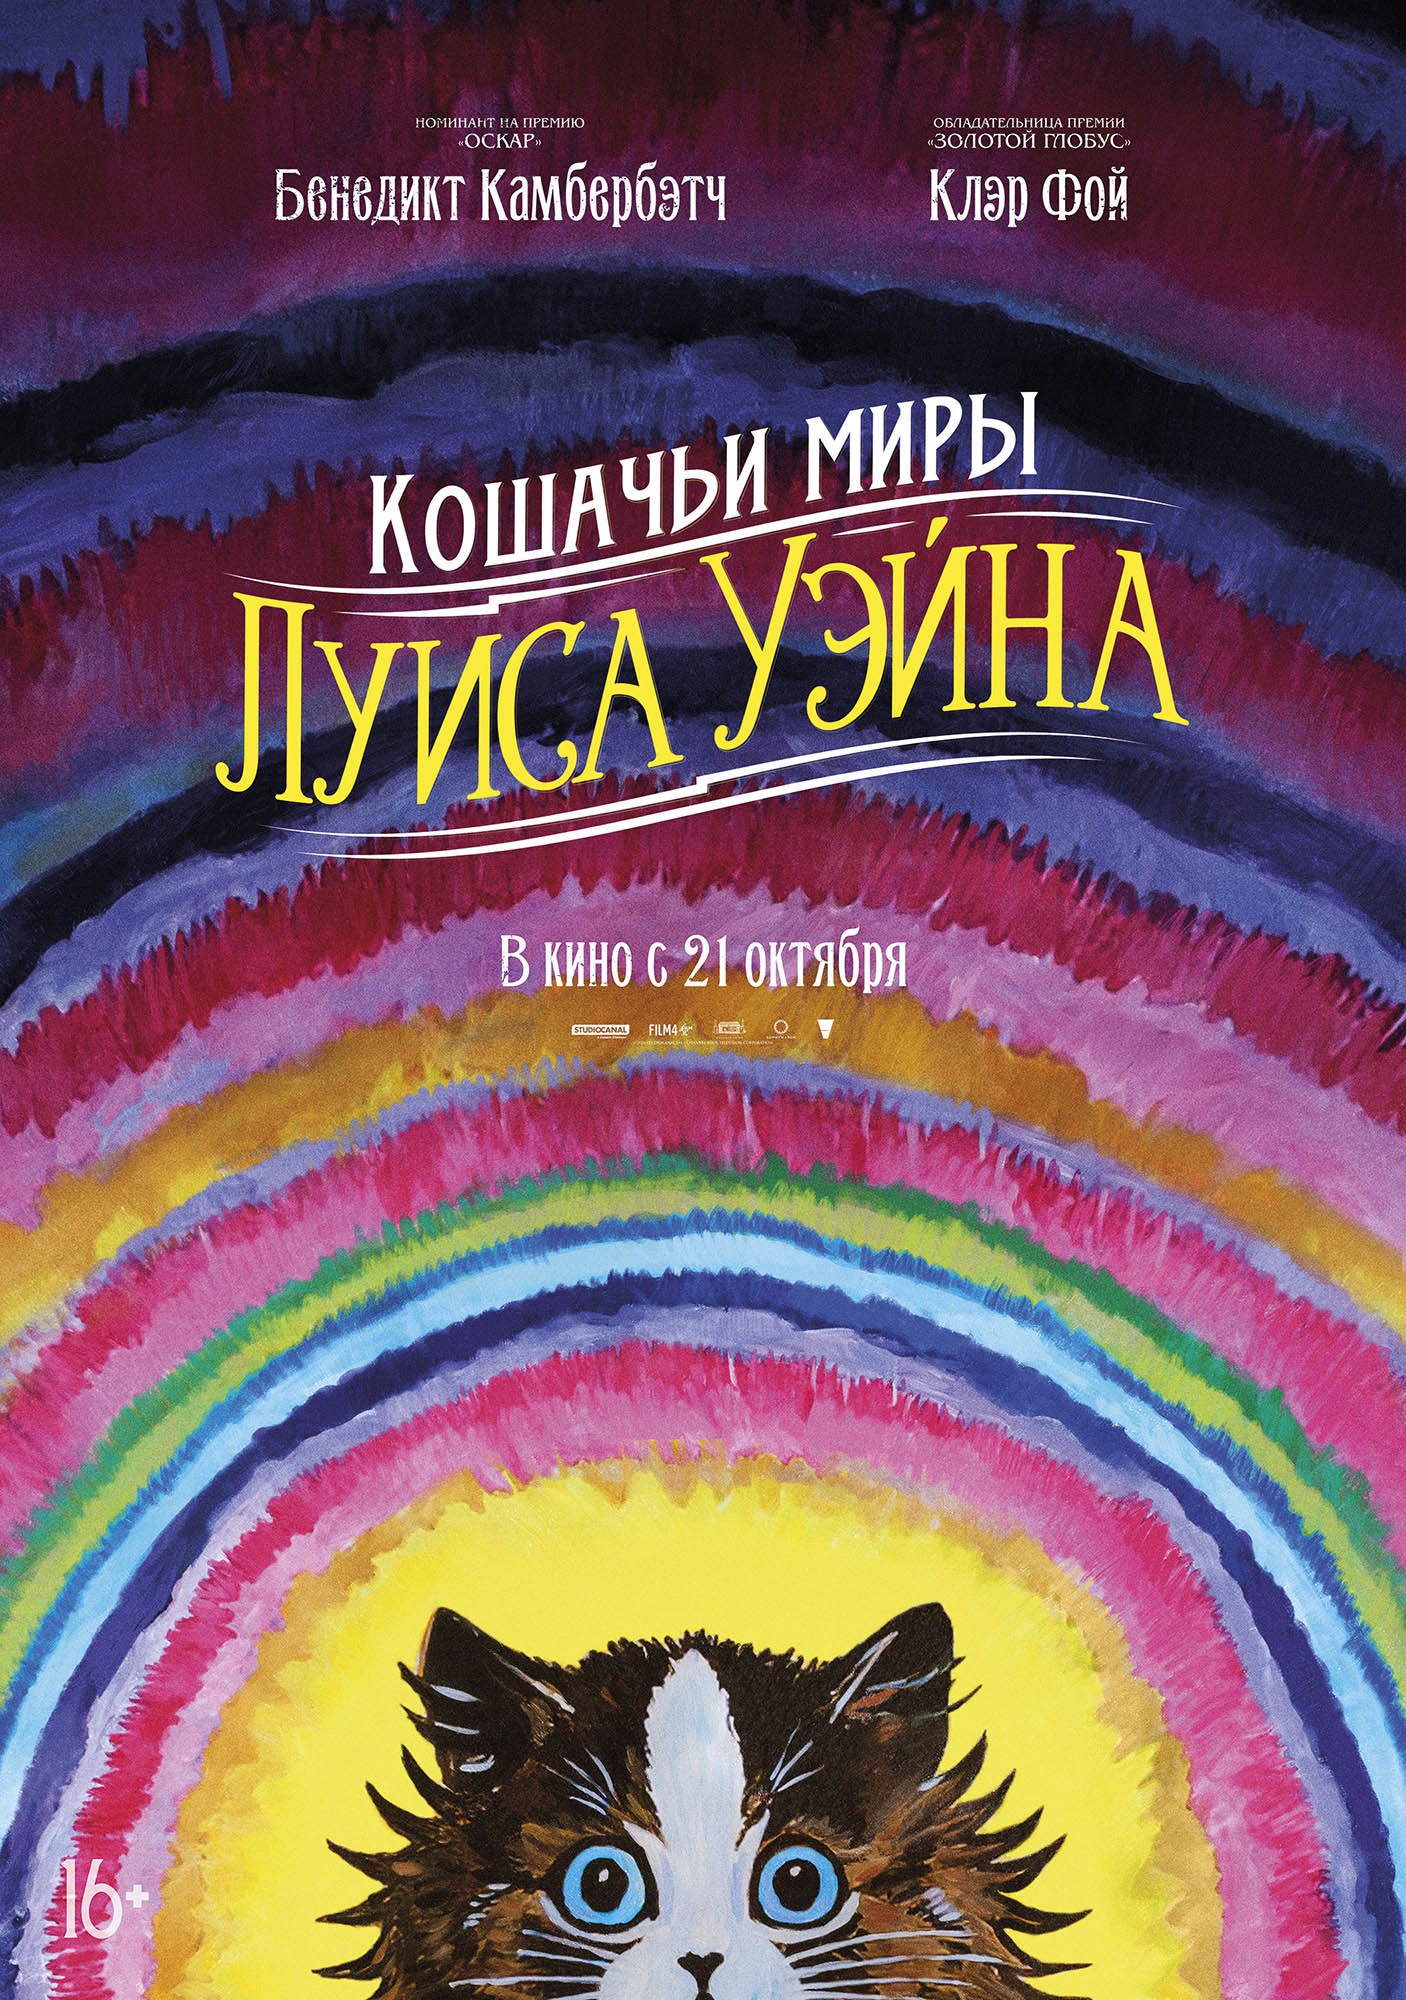 Кошачьи миры Луиса Уэйна: постер N190854